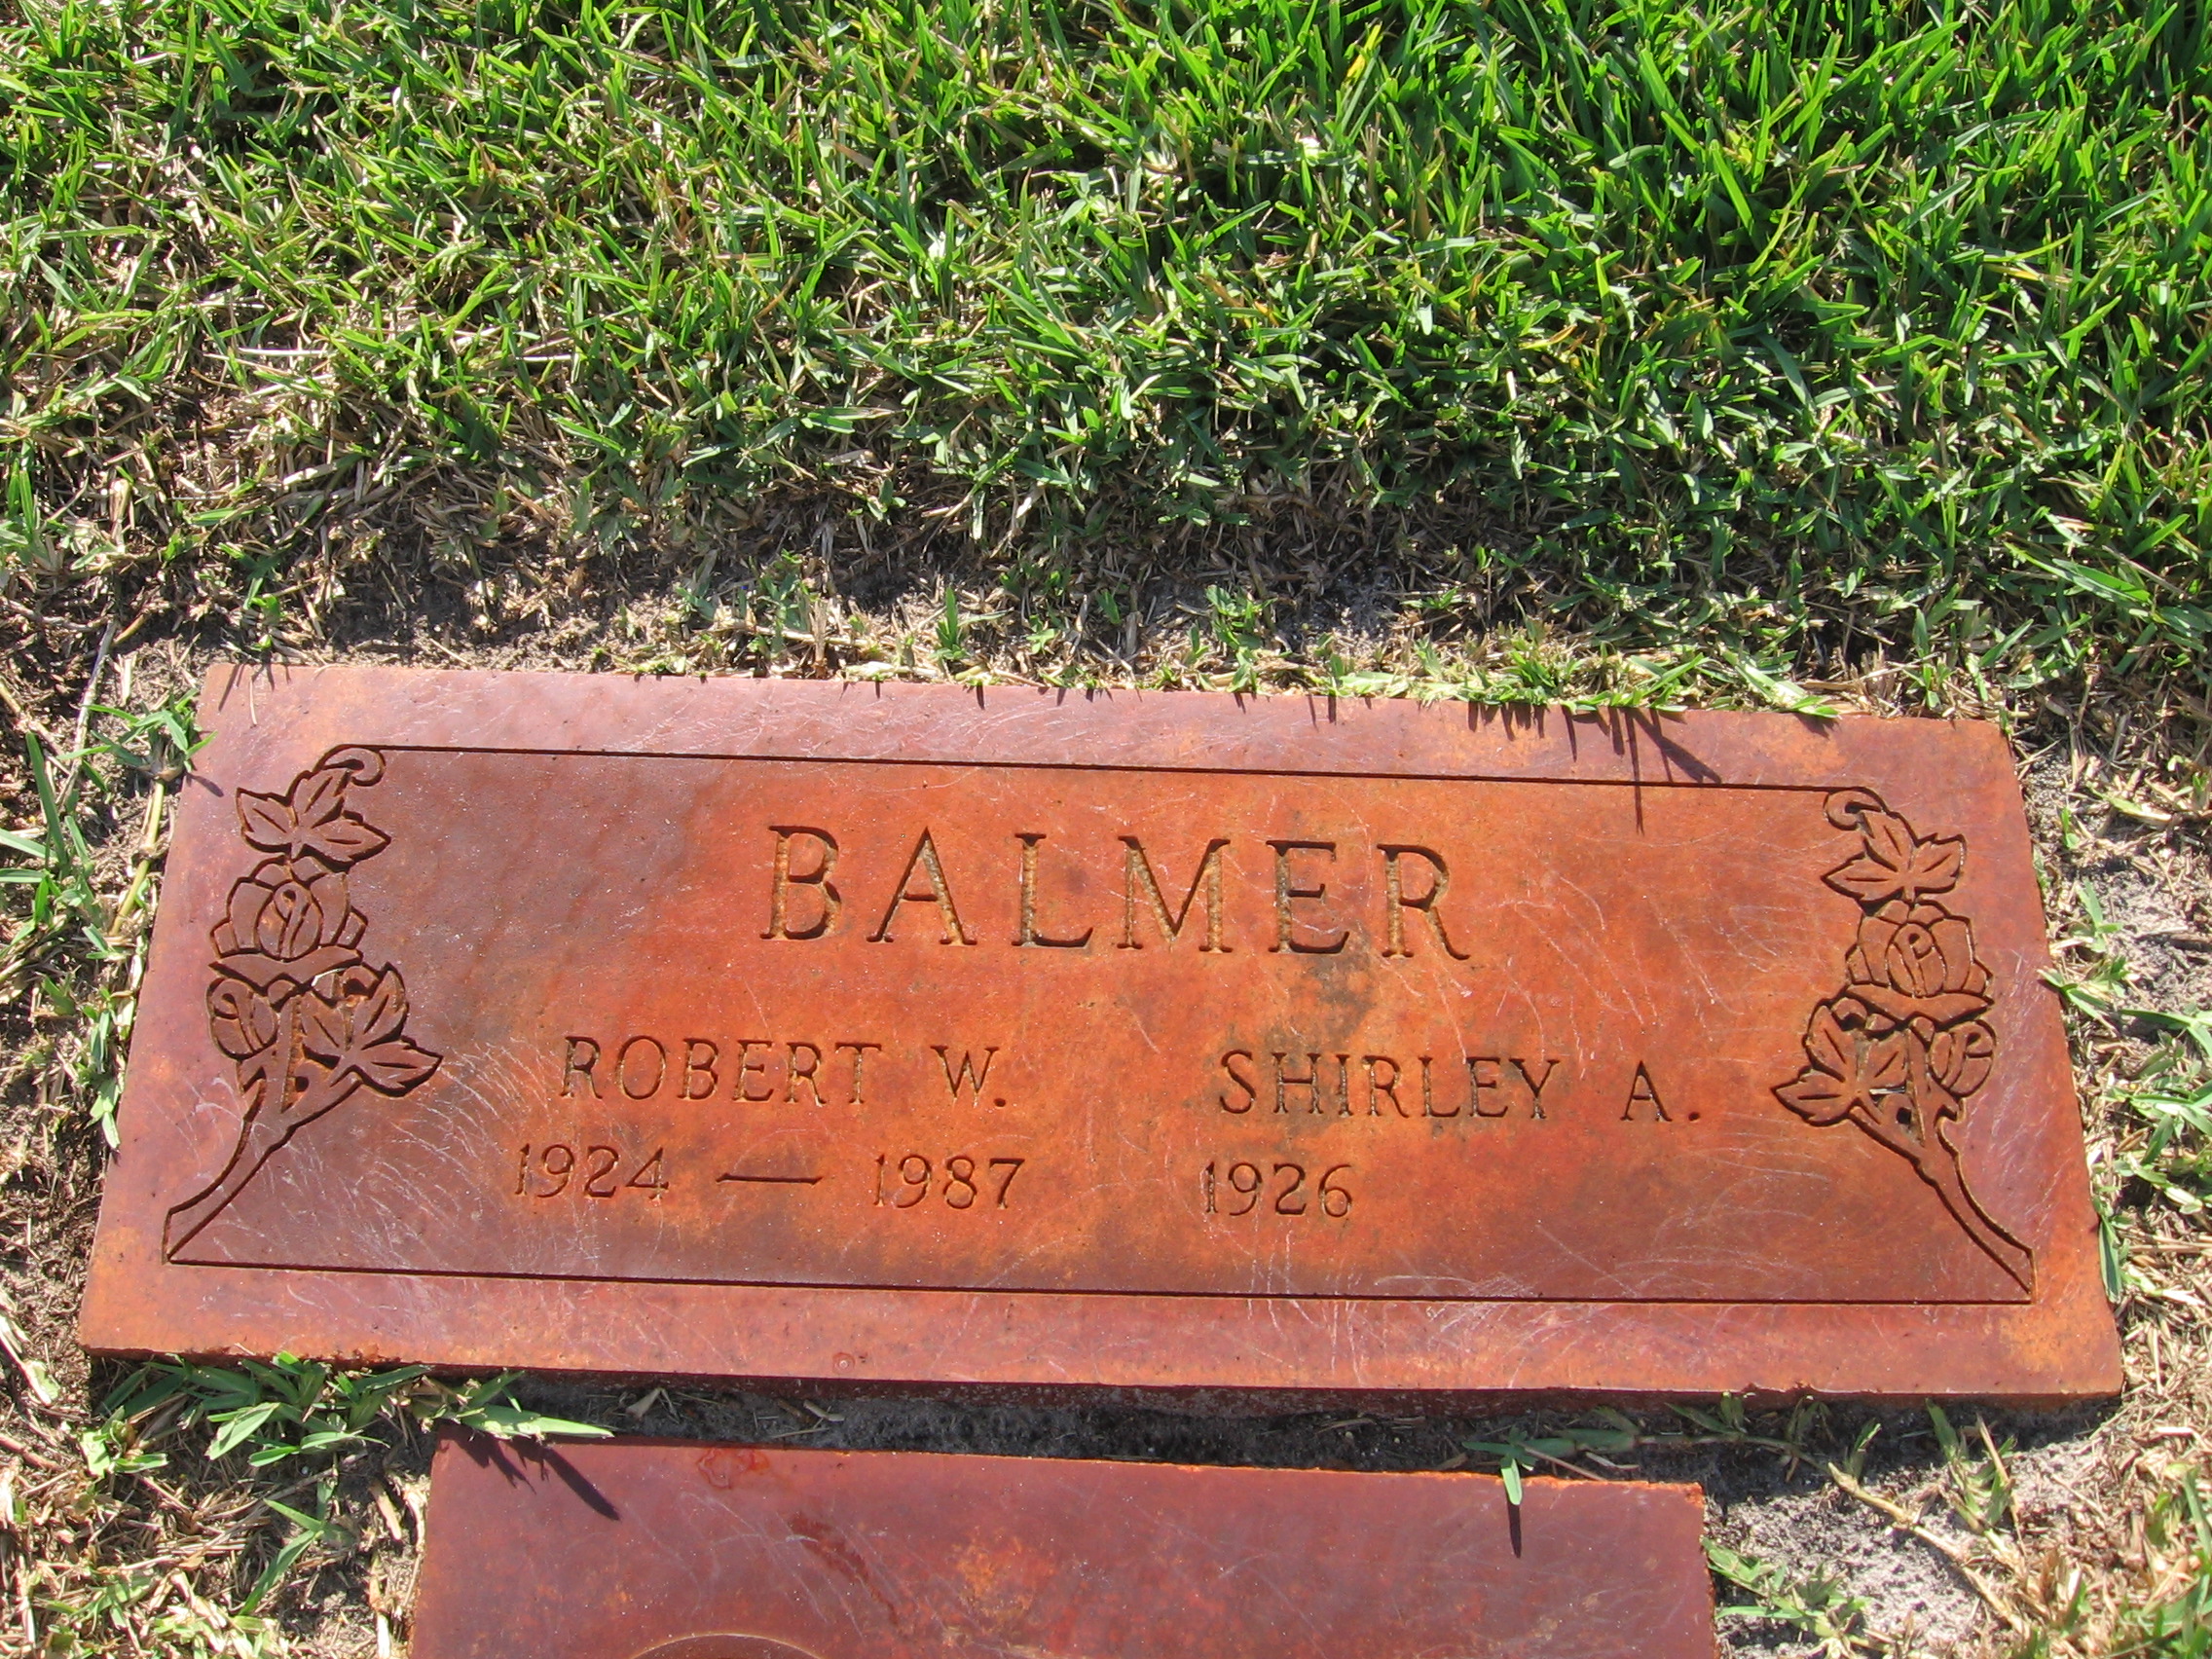 Robert W Balmer